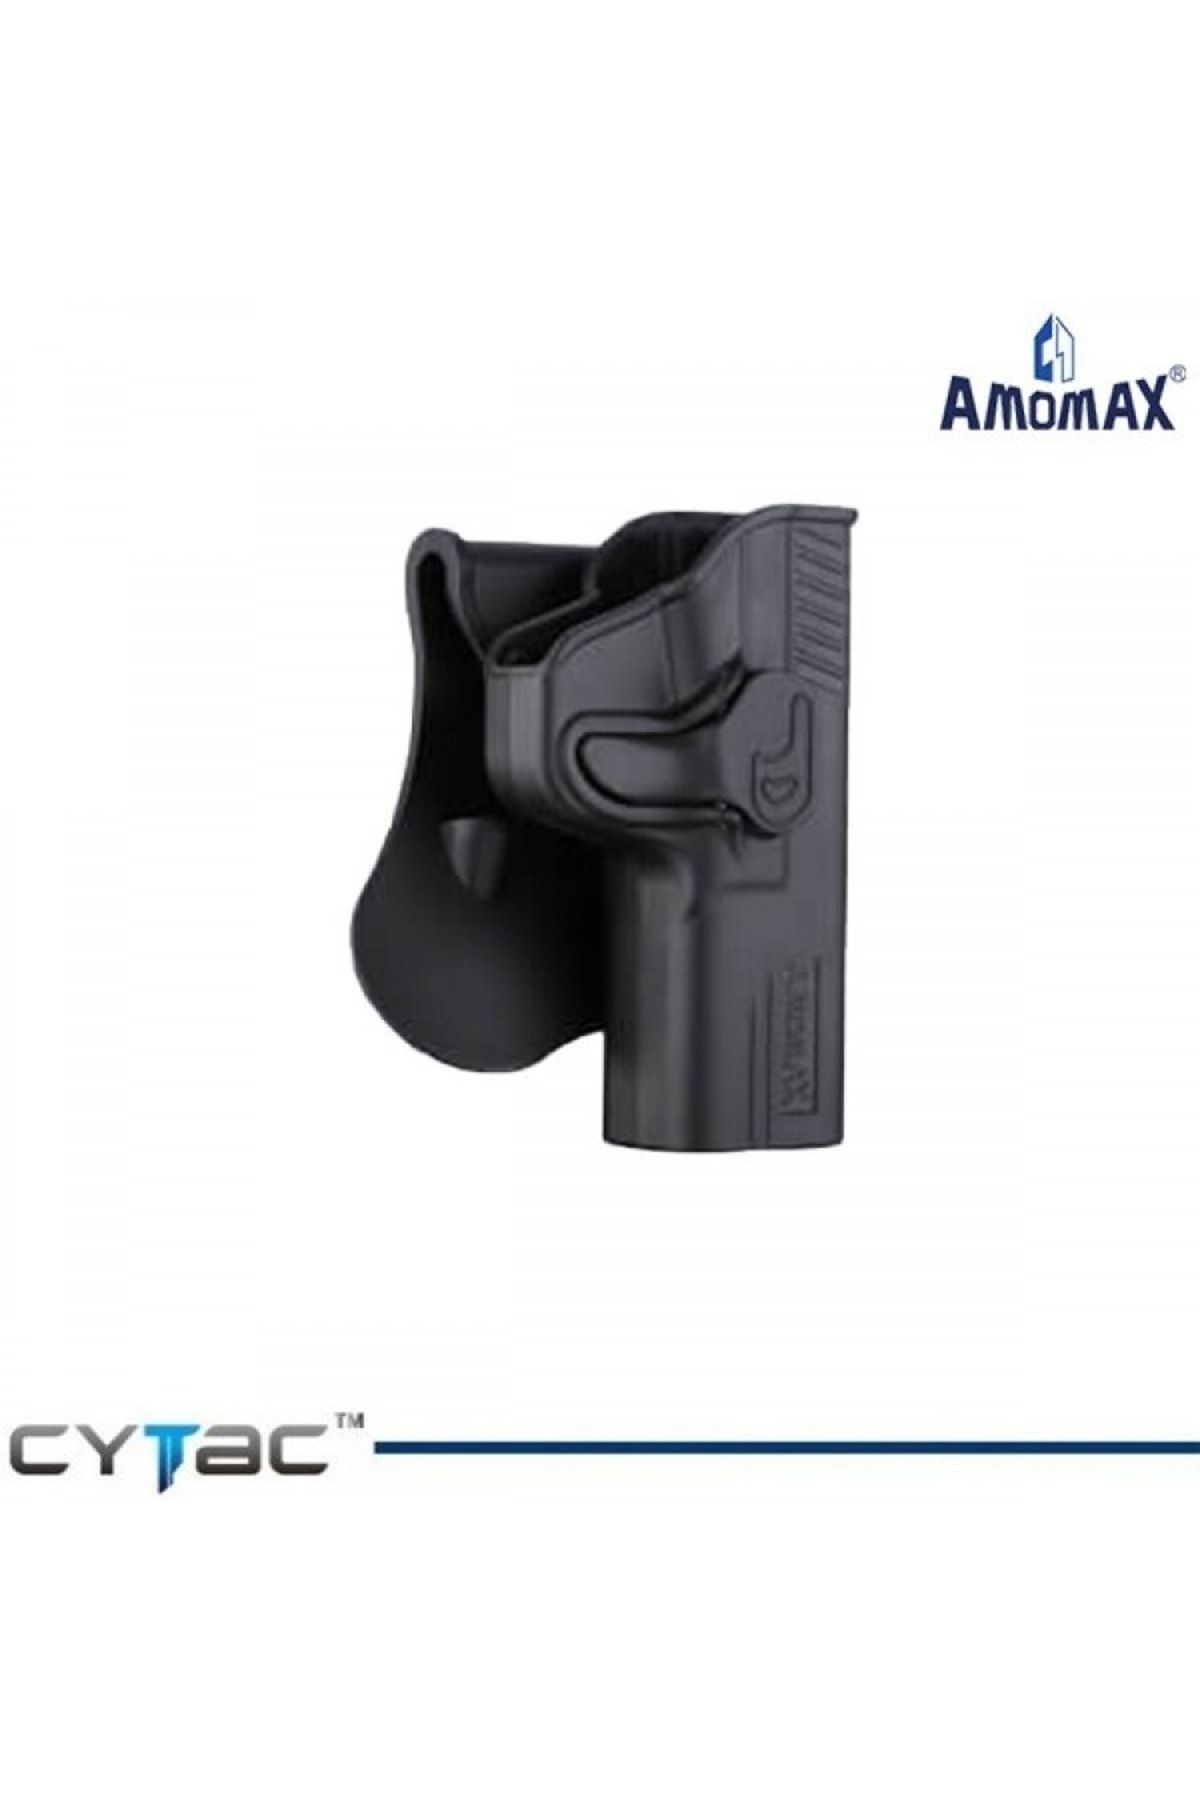 Cytac Amomax Tabanca Uyumlu Kılıfı S&w M&p 9mm